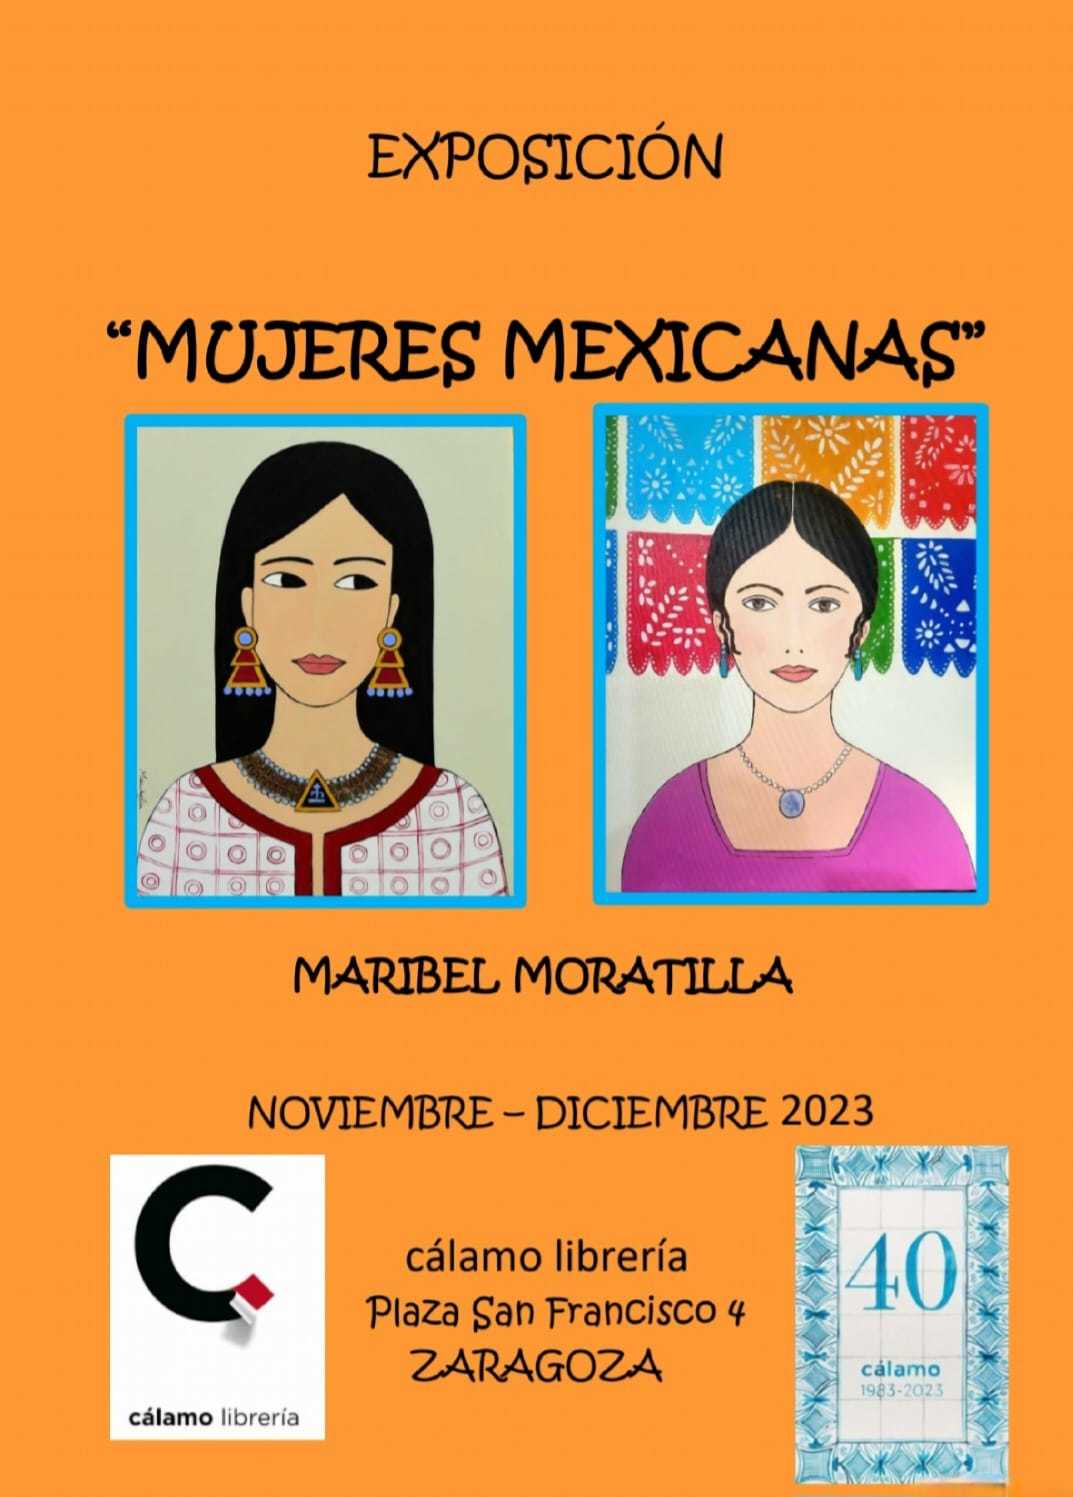 Exposición "Mujeres mexicanas", de Maribel Moratilla